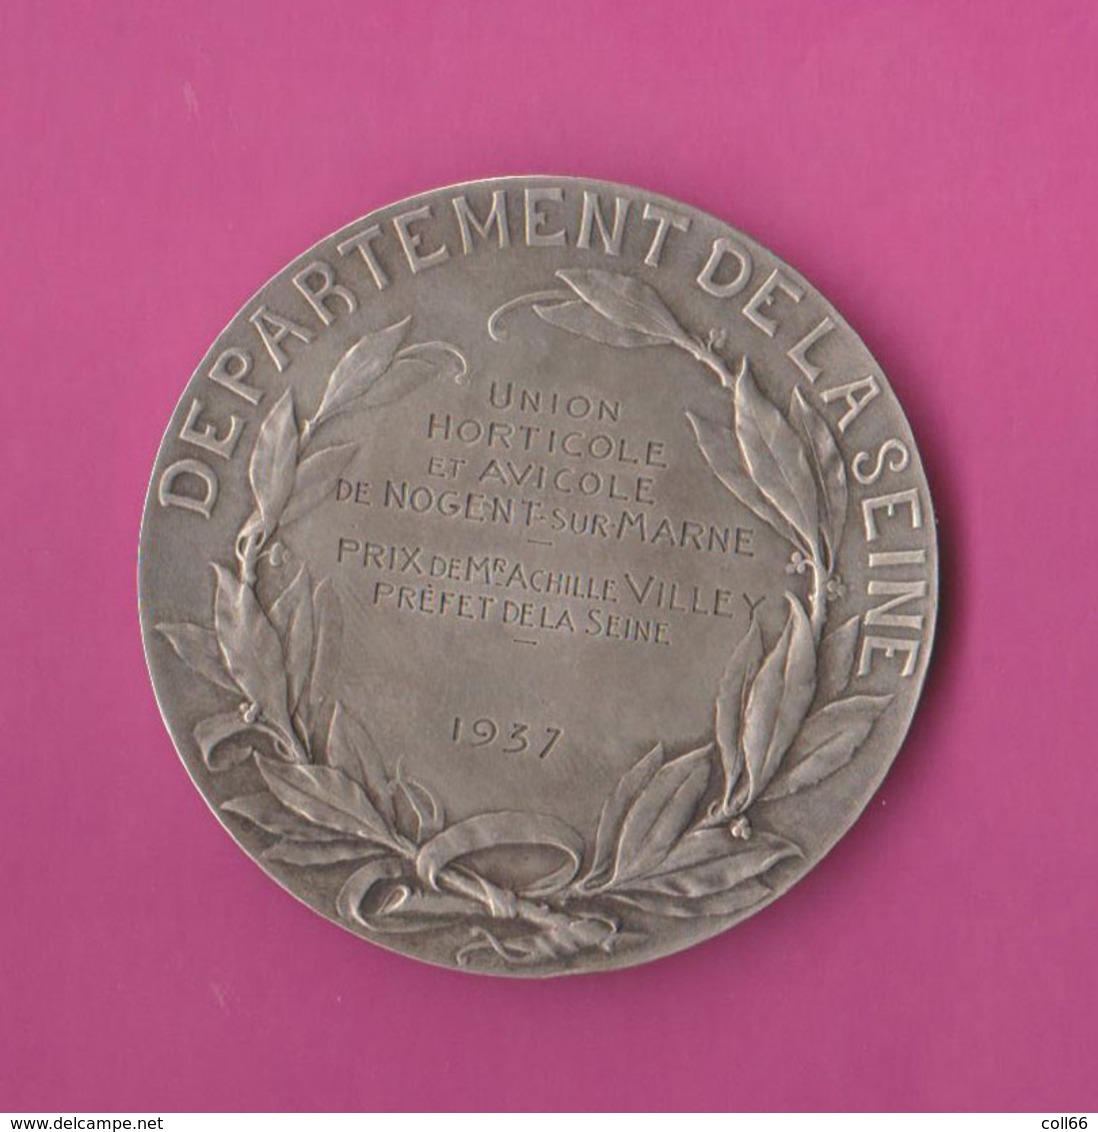 1937 Médaille Argent Union Horticole Avicole Nogent/Marne Villey Ville Paris 61gr Dim 5cm Prudhomme - Professionnels / De Société